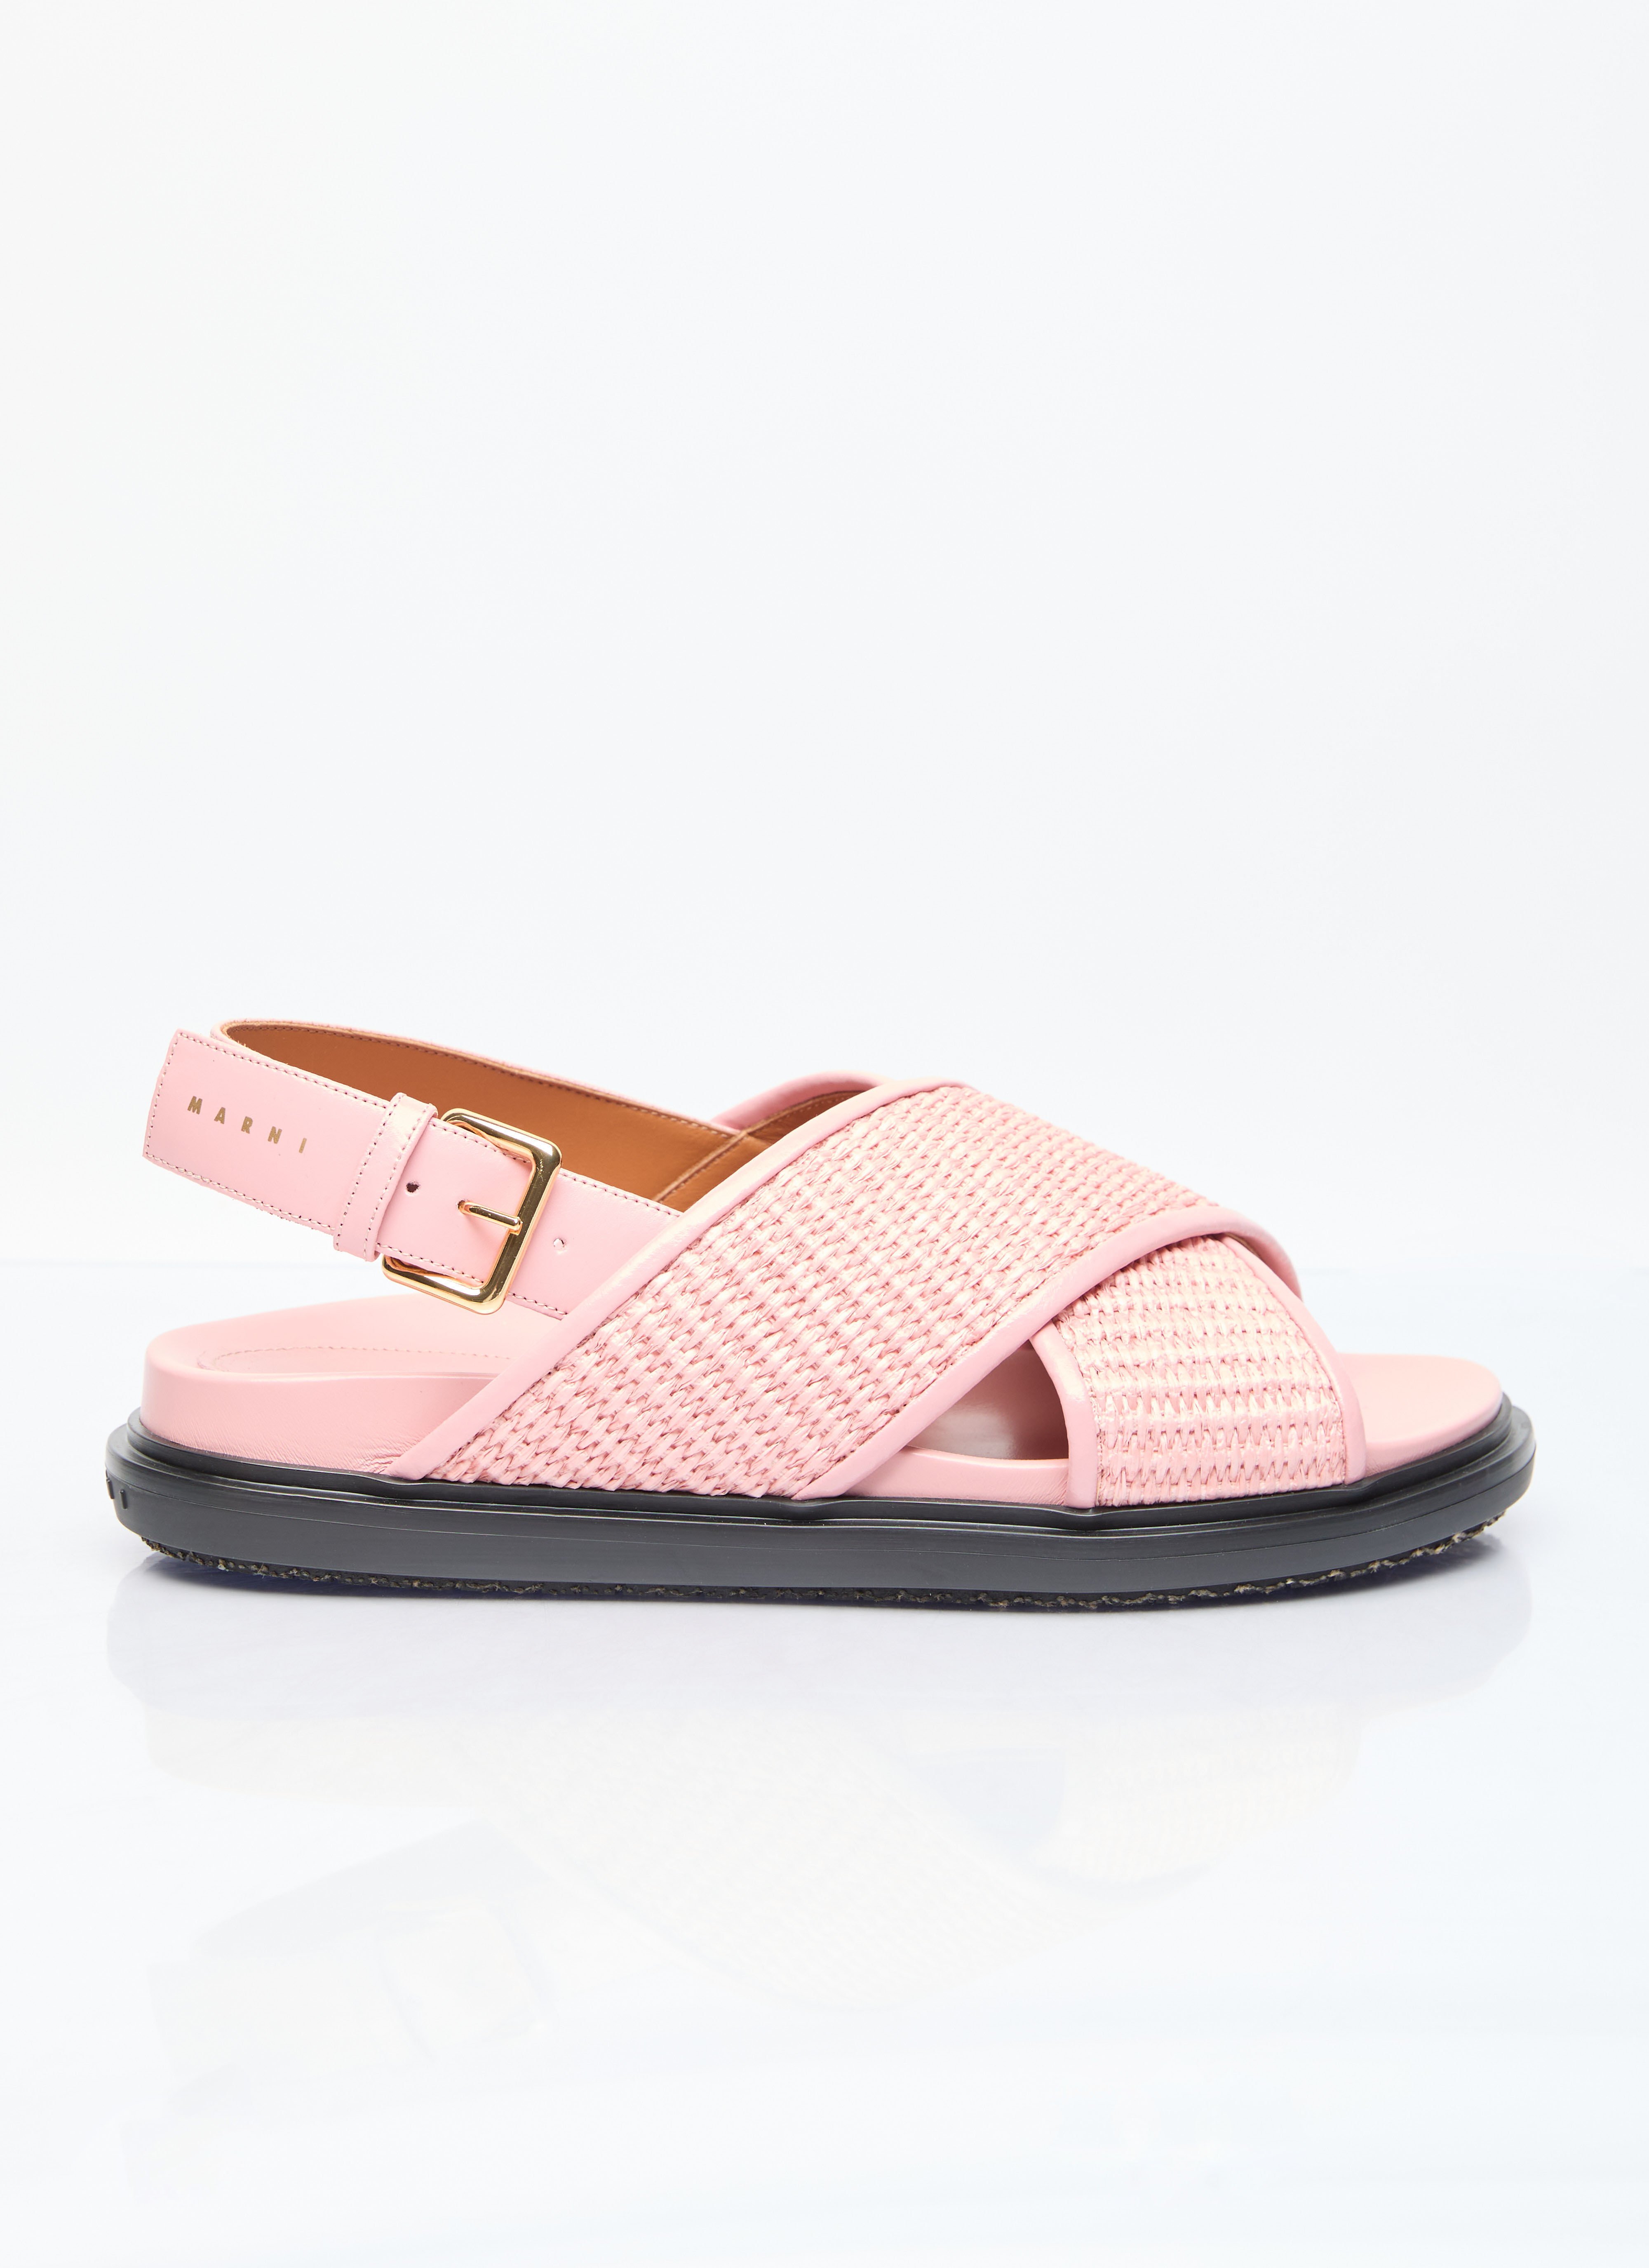 Marni Fussbet Sandals Pink mni0255017